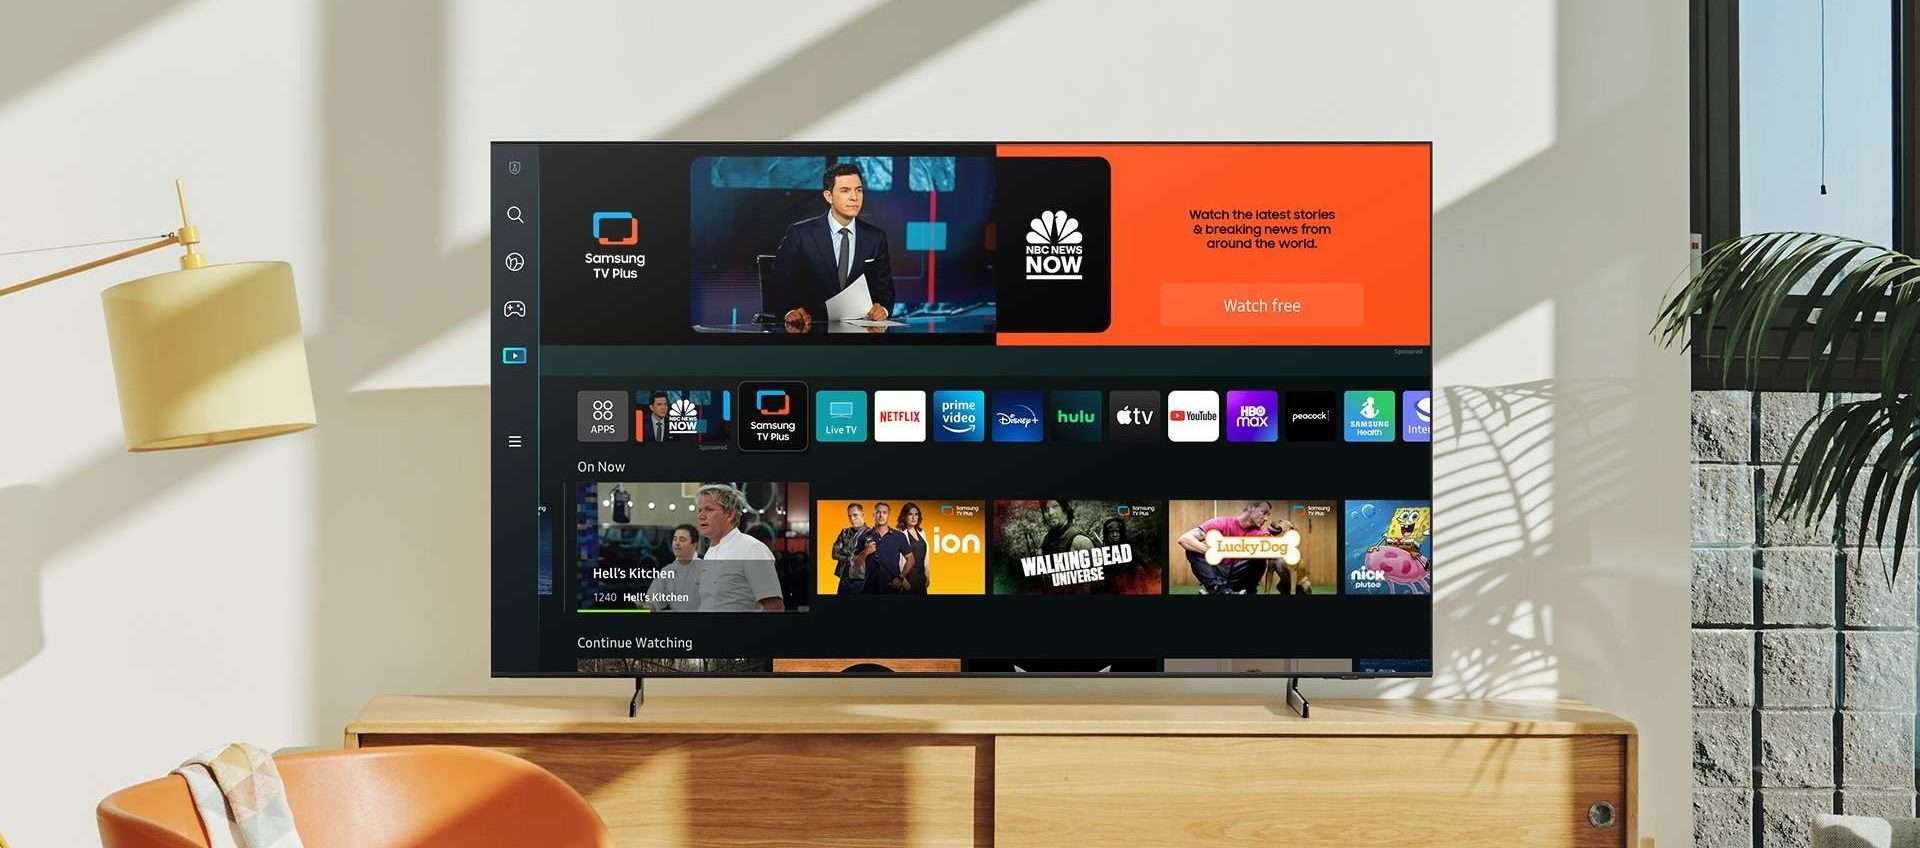 Smart TV Samsung da 55 pollici in offerta a 423€ su Amazon: è IMPERDIBILE (anche a rate)